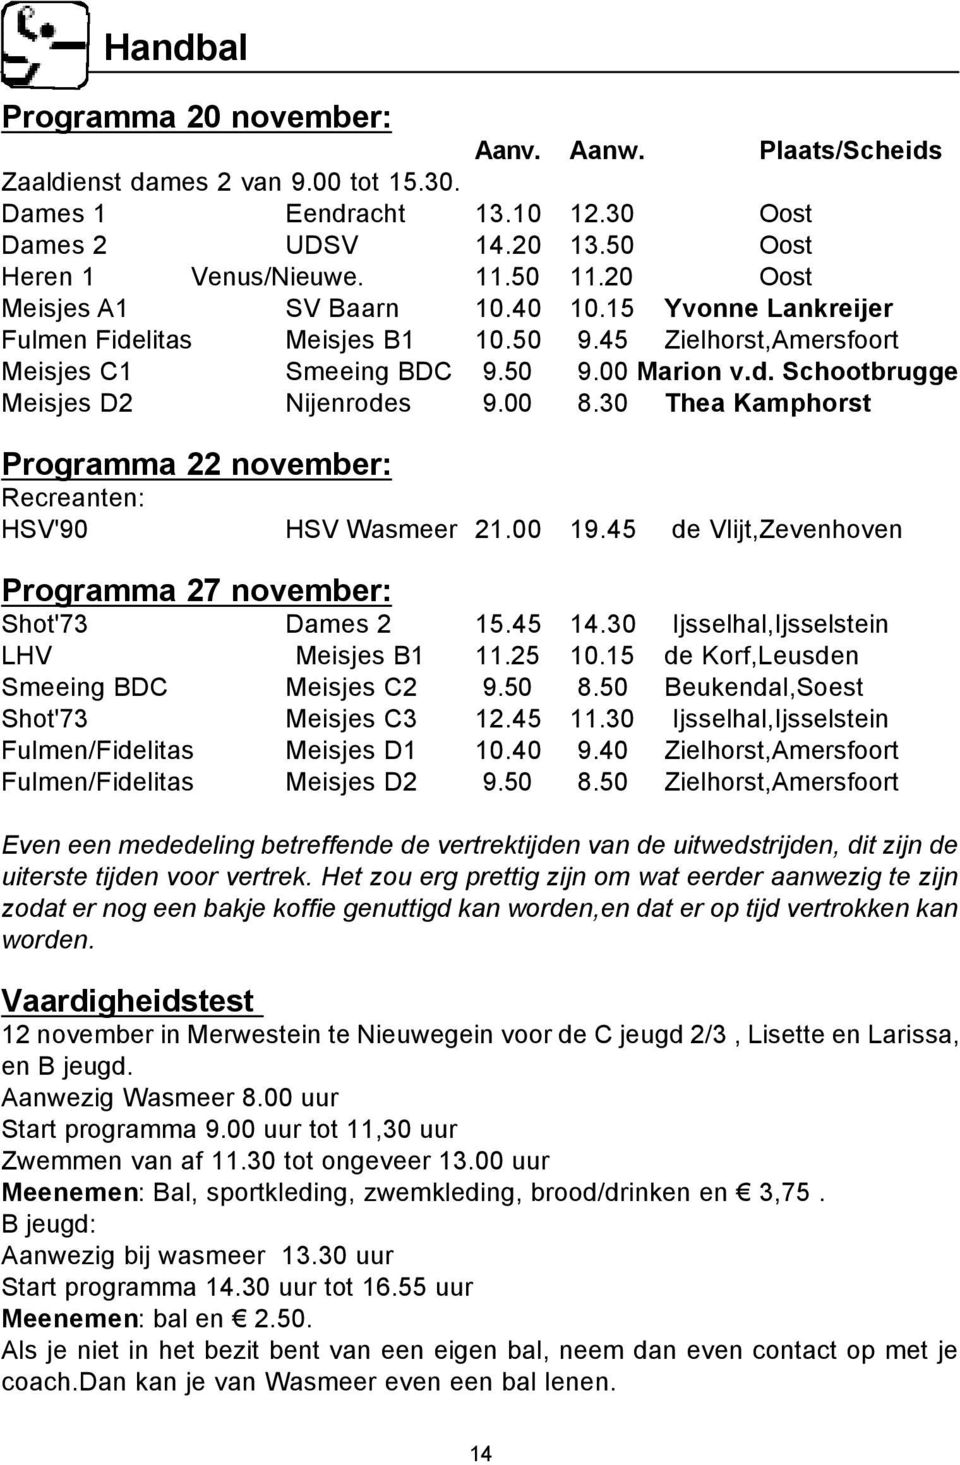 00 8.30 Thea Kamphorst Programma 22 november: Recreanten: HSV'90 HSV Wasmeer 21.00 19.45 de Vlijt,Zevenhoven Programma 27 november: Shot'73 Dames 2 15.45 14.30 Ijsselhal,Ijsselstein LHV Meisjes B1 11.